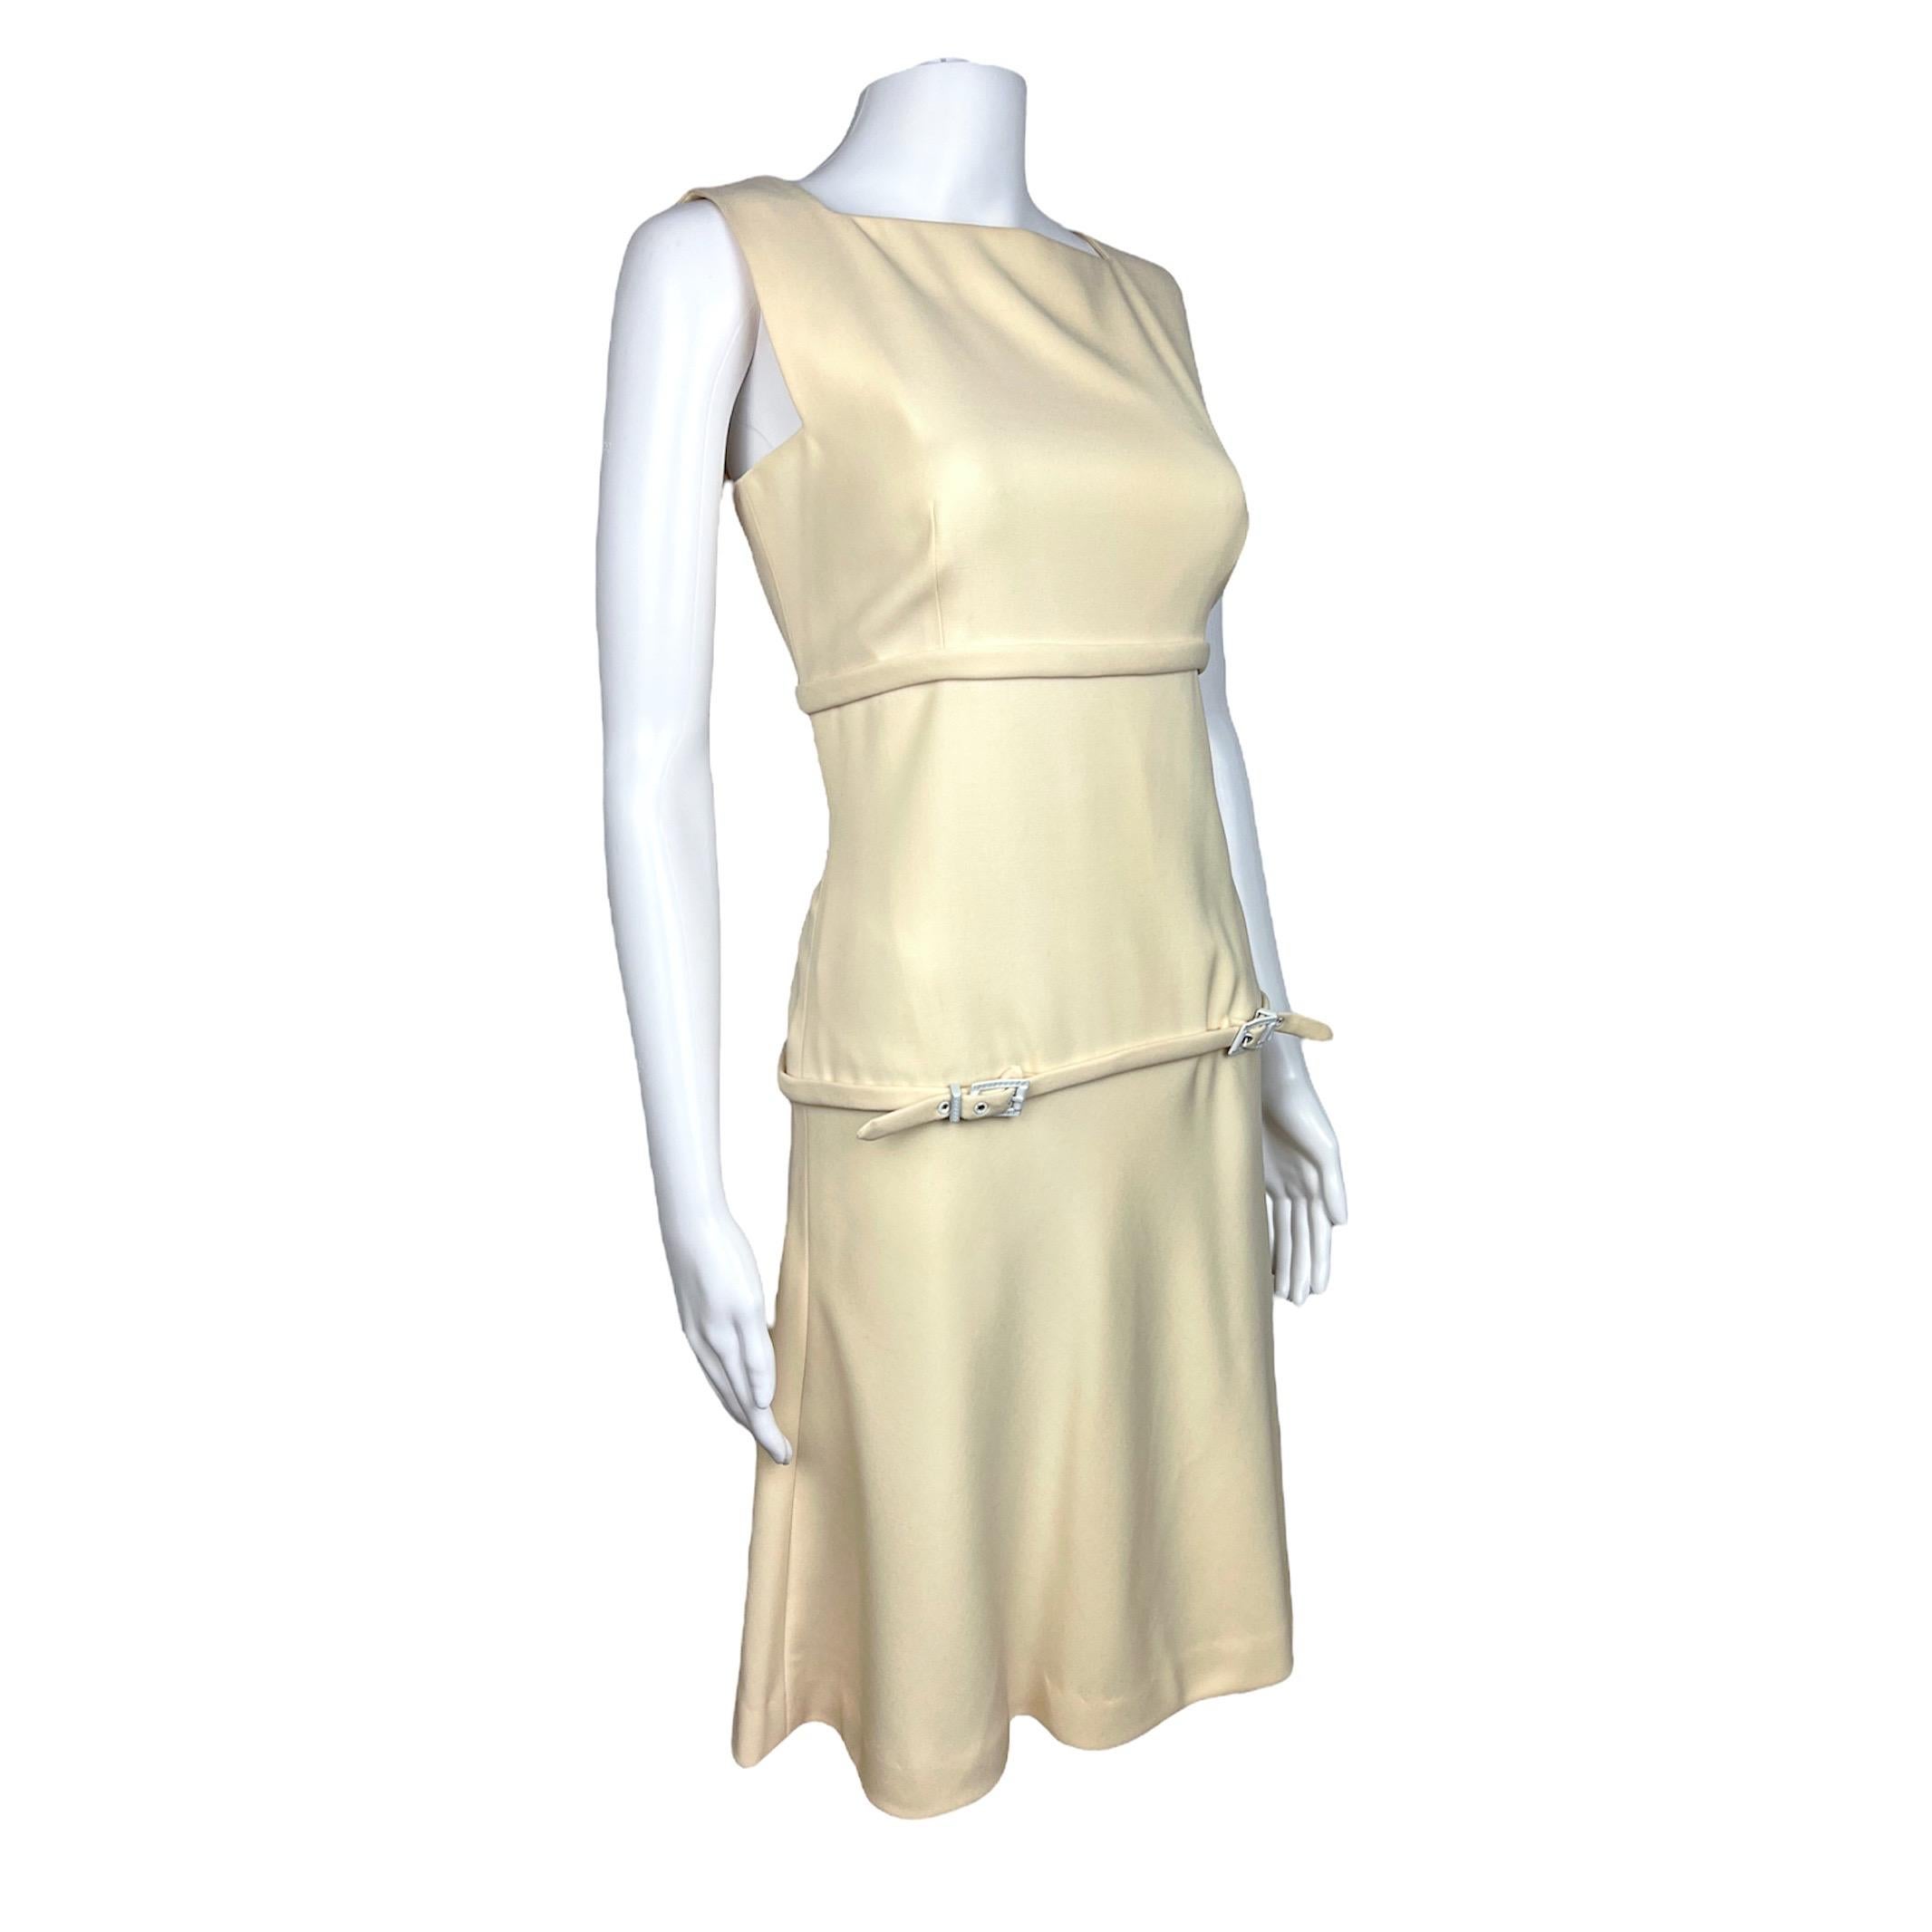 Magnifique robe crème inspirée des années 60 de la collection printemps-été 1996 de Gianni Versace Couture. La robe est de longueur genou, avec de fines ceintures réglables comprenant des détails de motif Areca classique de Versace sur la